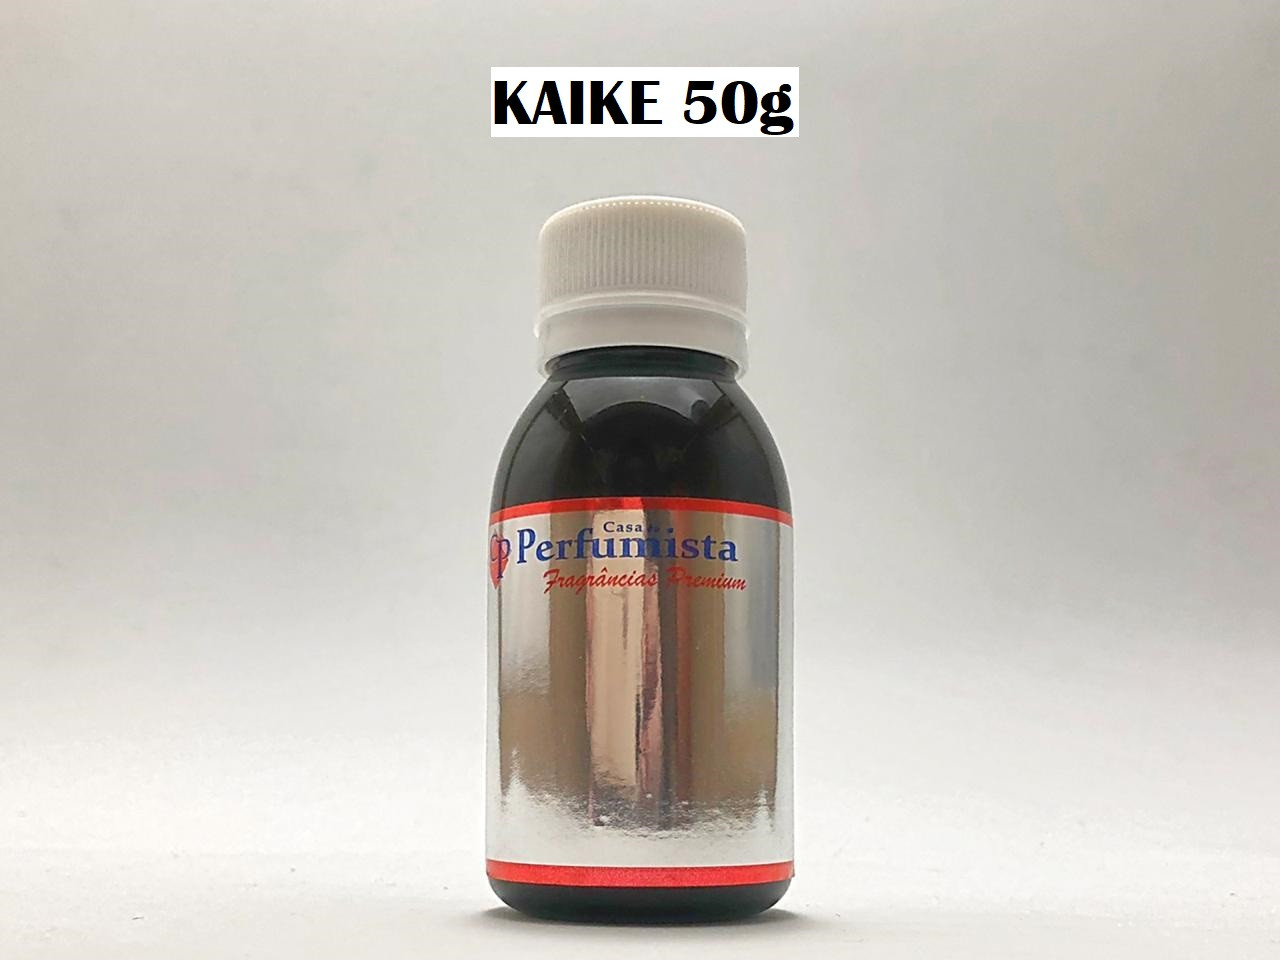 KAIKE 50g - Inspiração: Kaiak Aventura Masculino